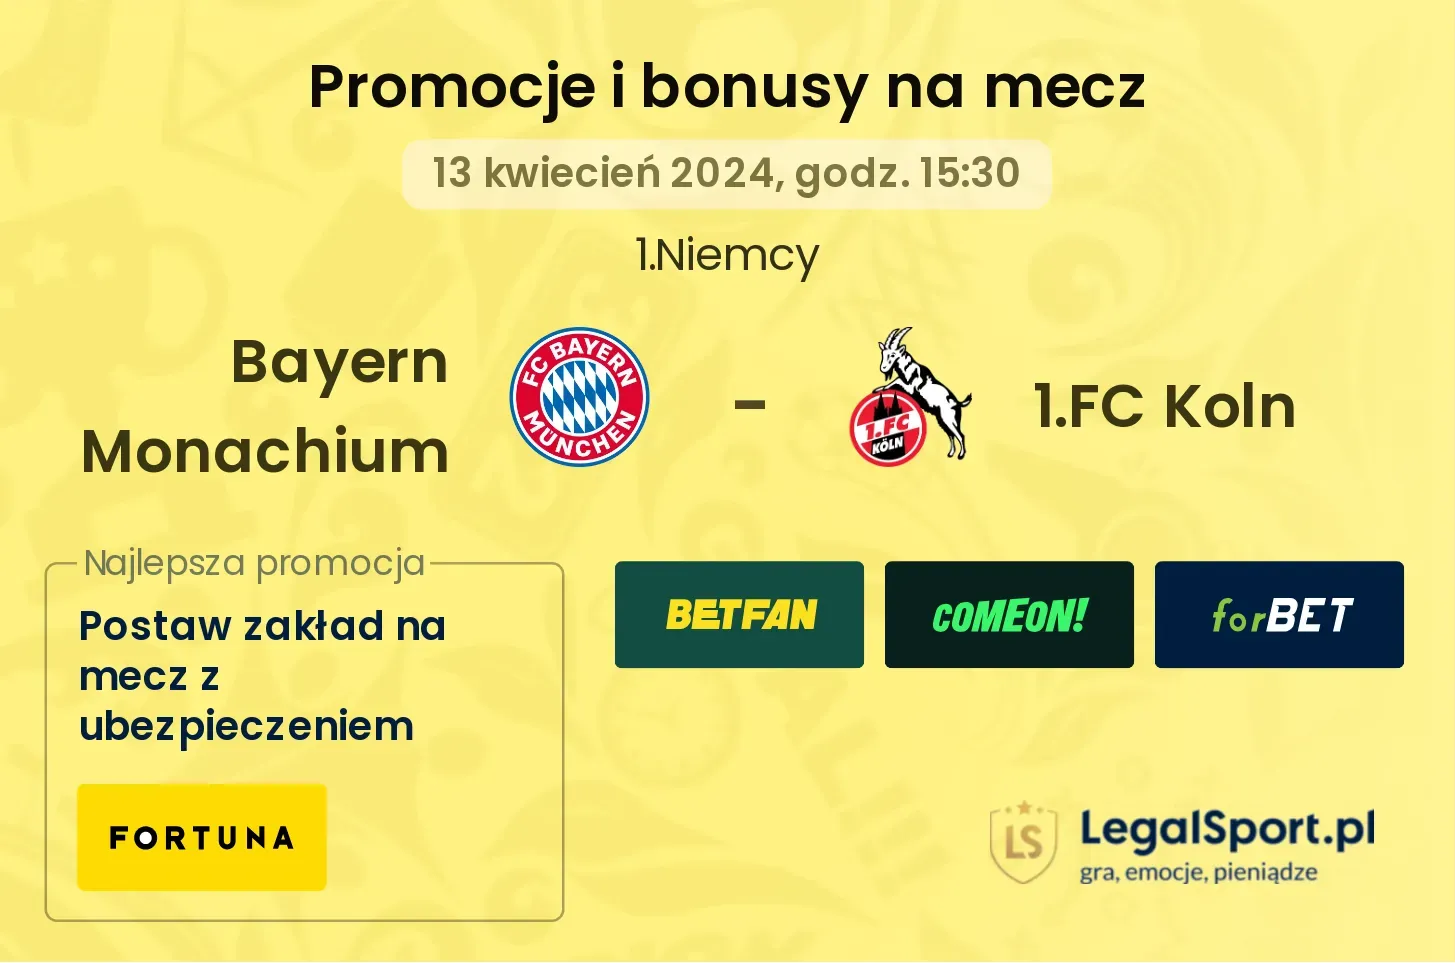 Bayern Monachium - 1.FC Koln promocje bonusy na mecz